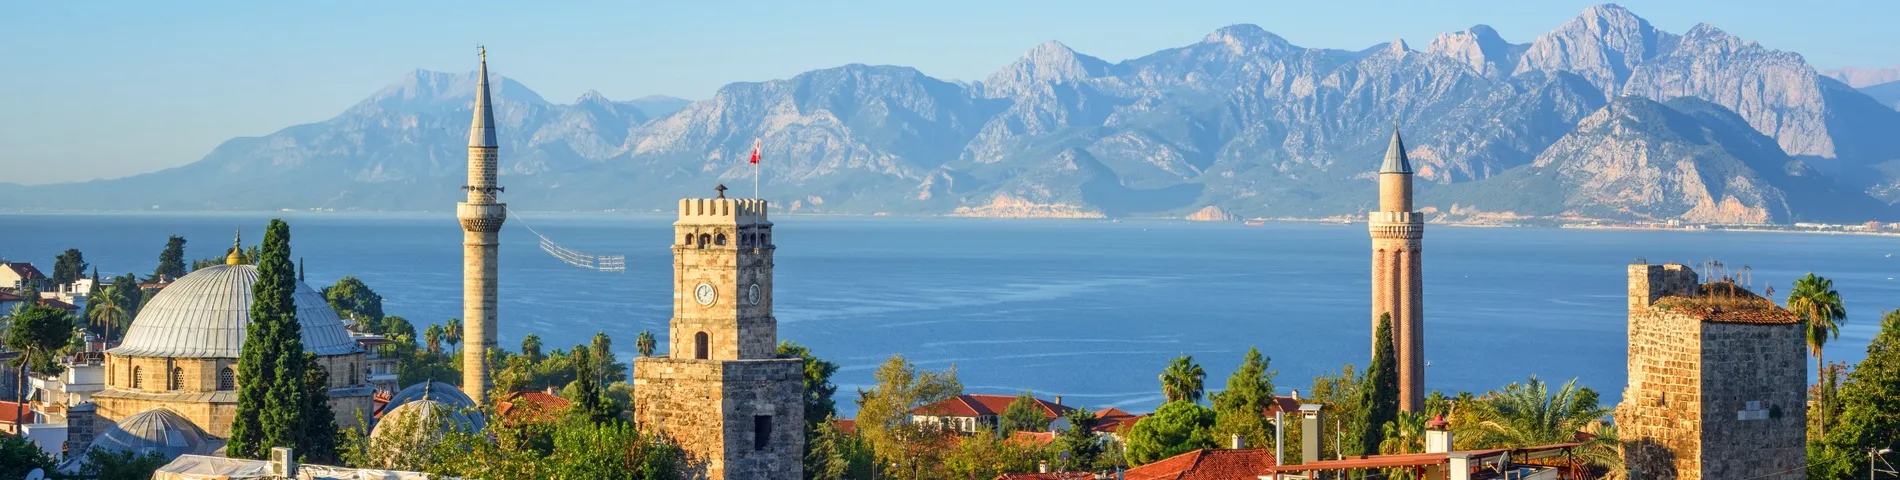 Antalya - 